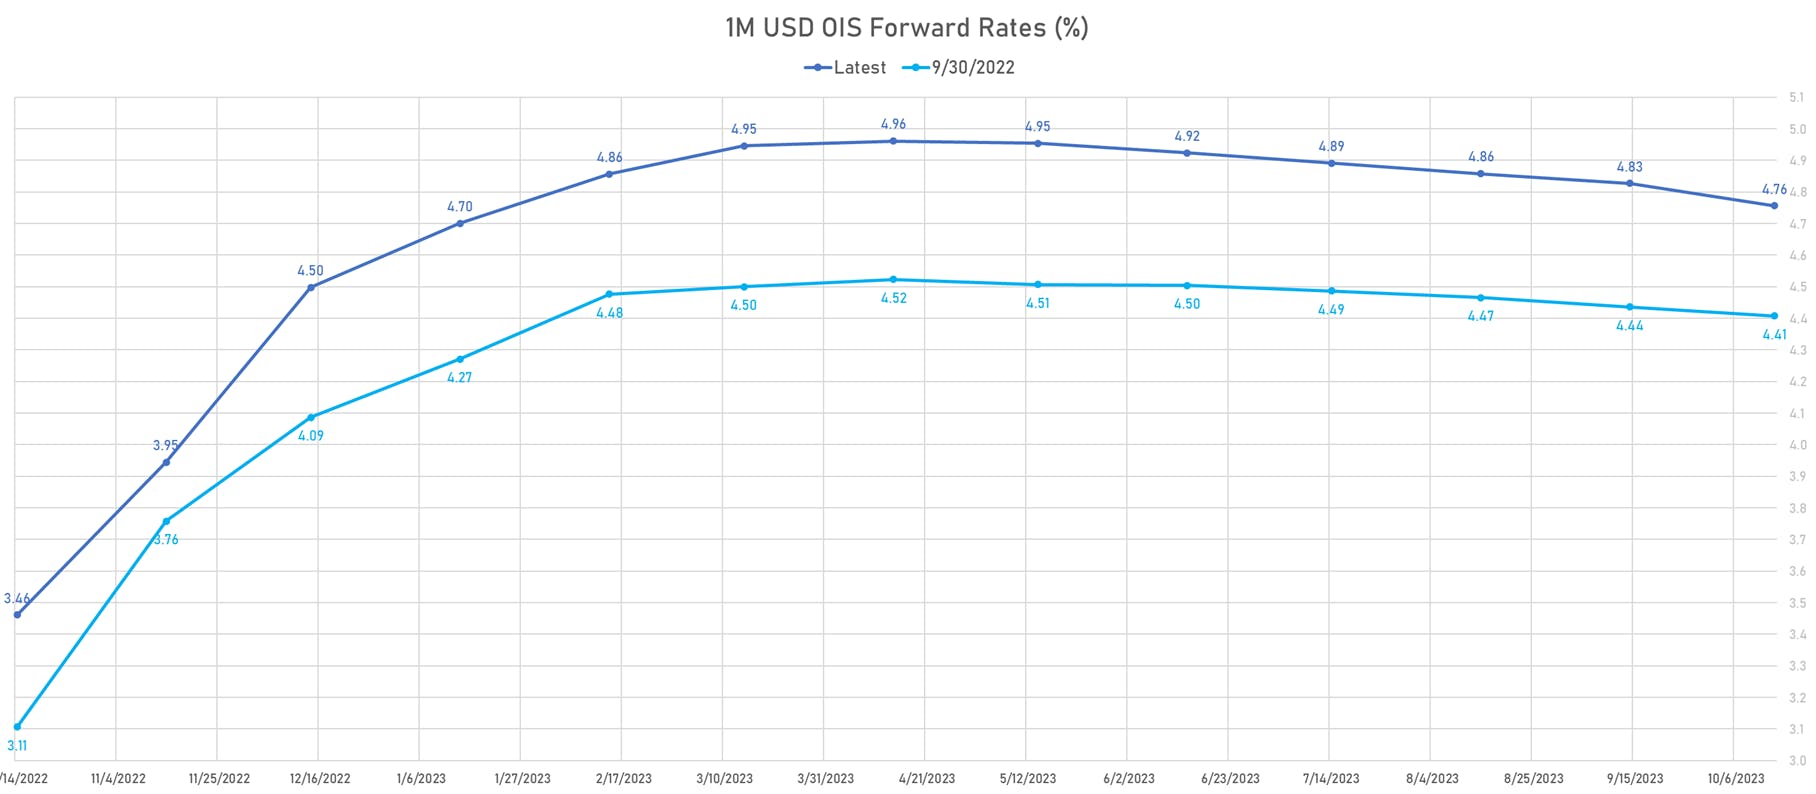 1M USD OIS Forward Rates Curve | Sources: phipost.com, Refinitiv data